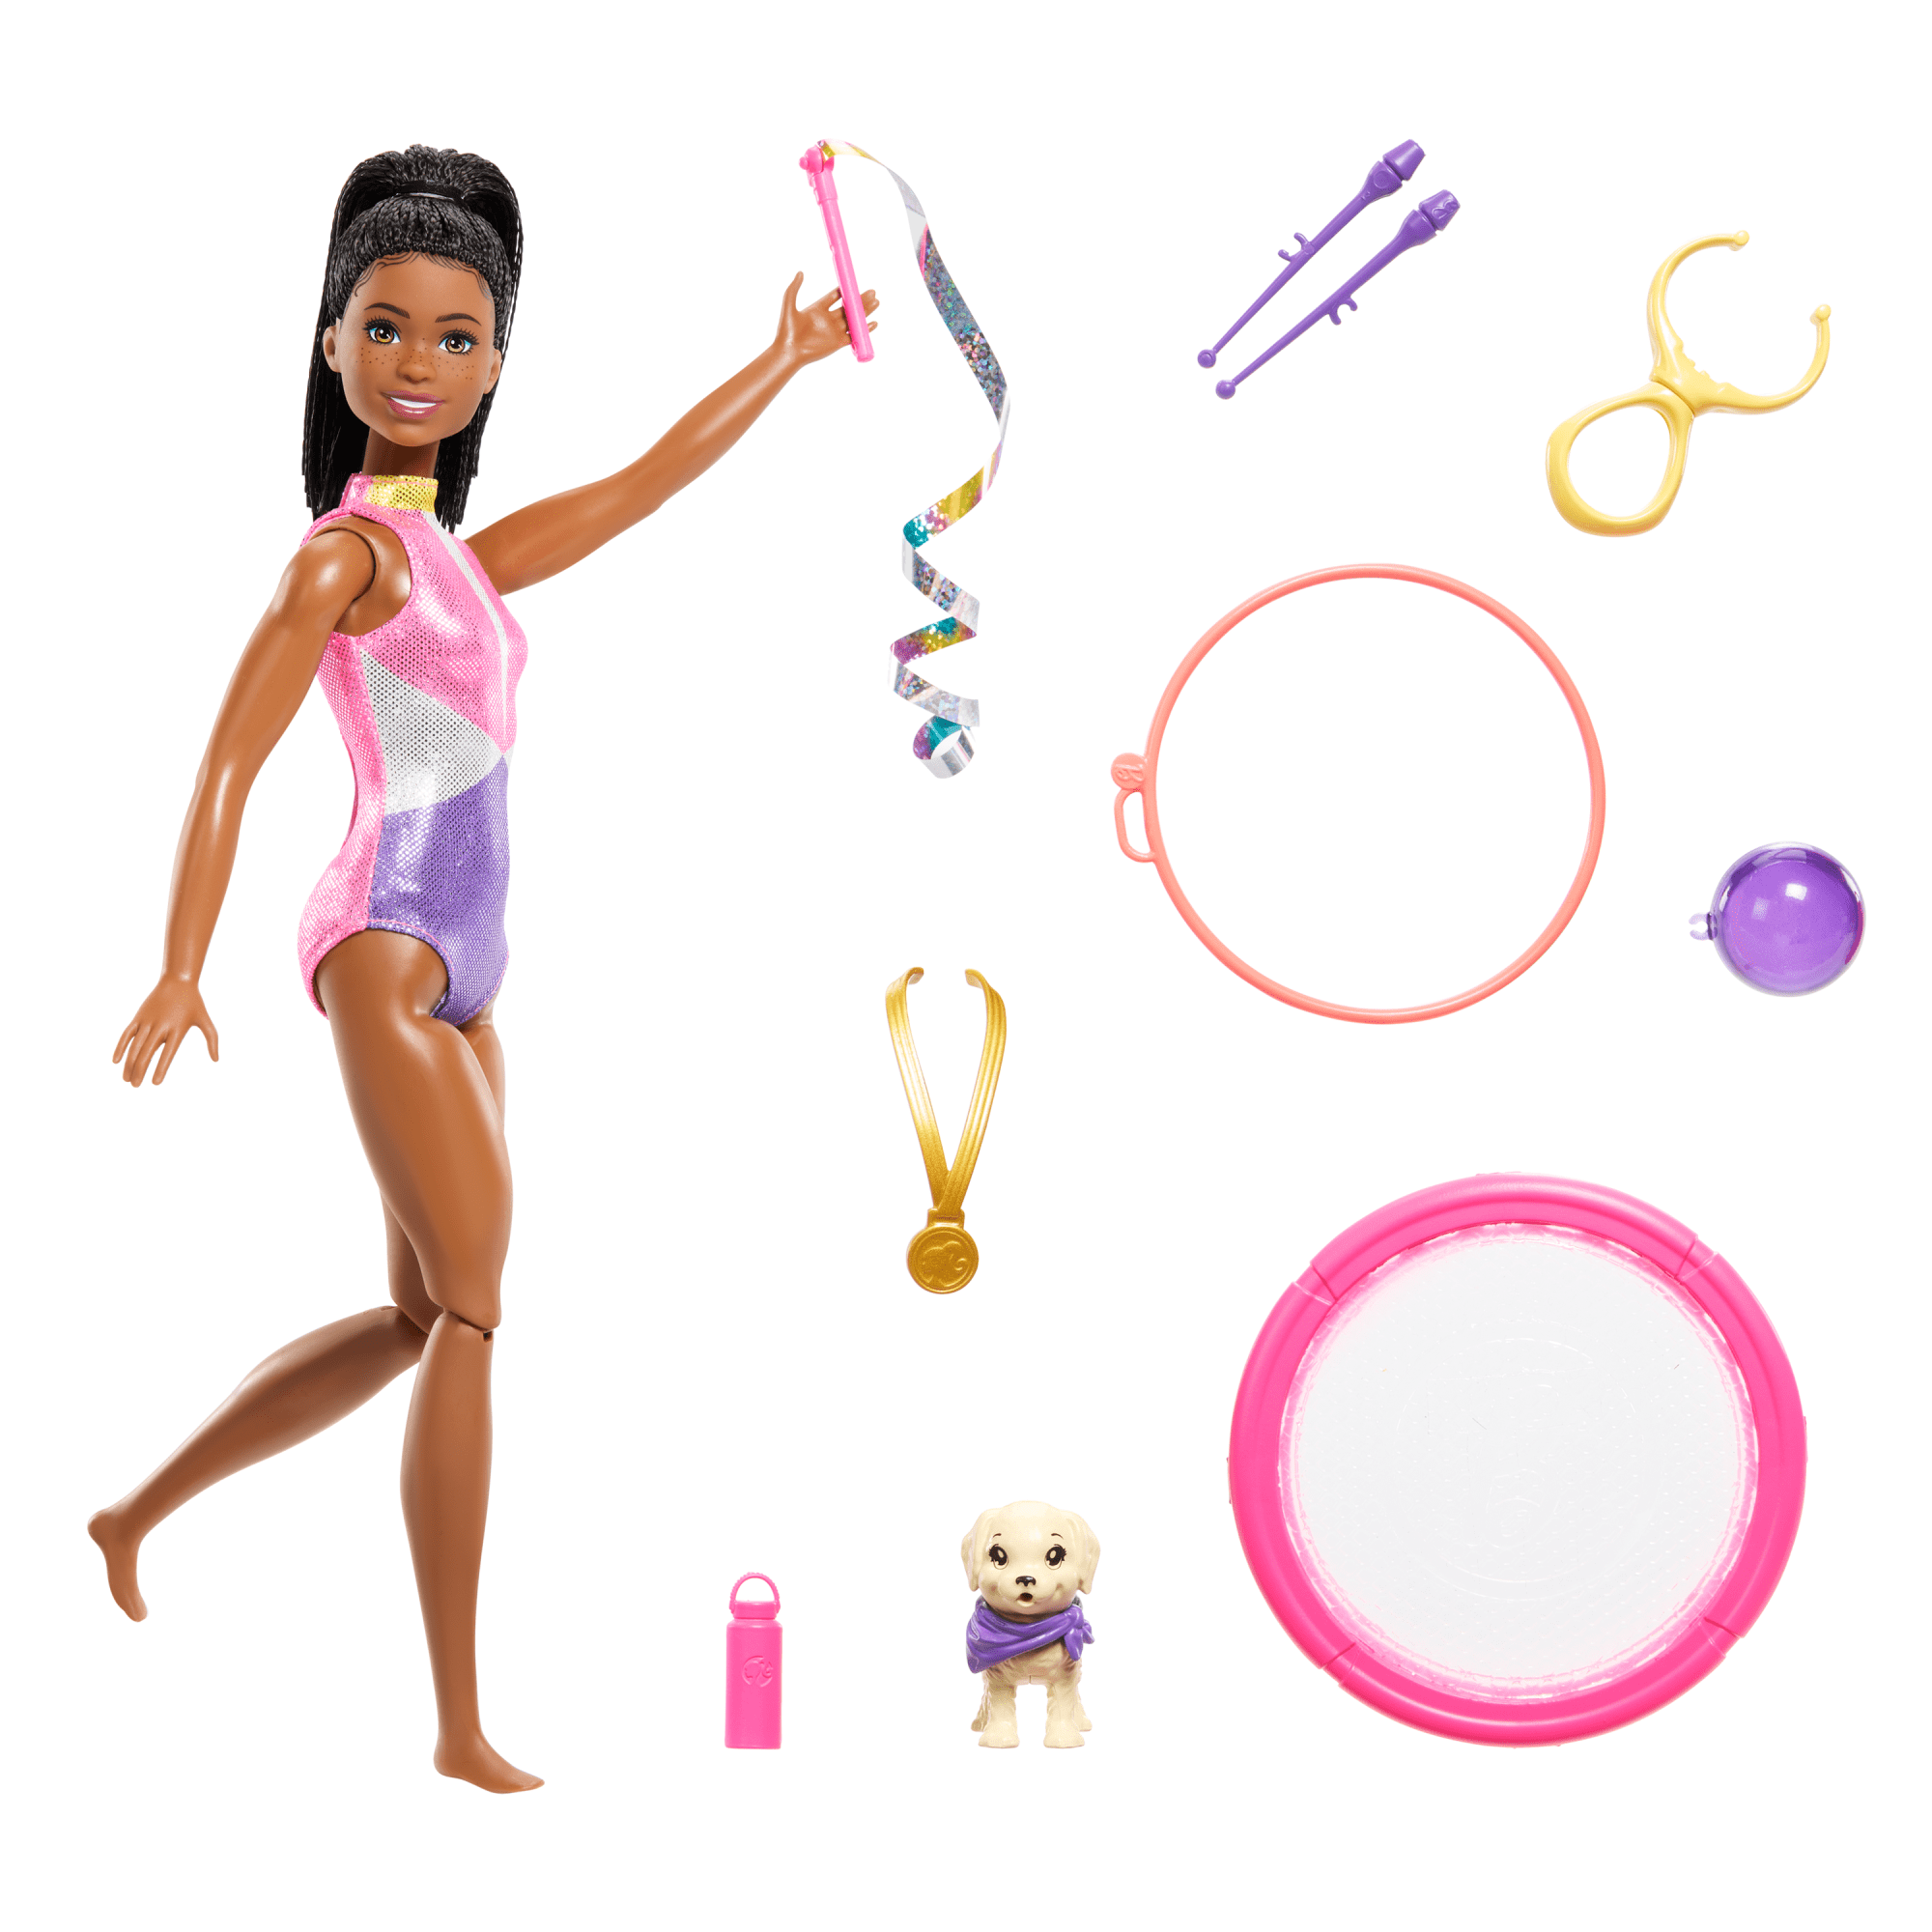 Barbie Ginnasta Bionda - Ritmica Store